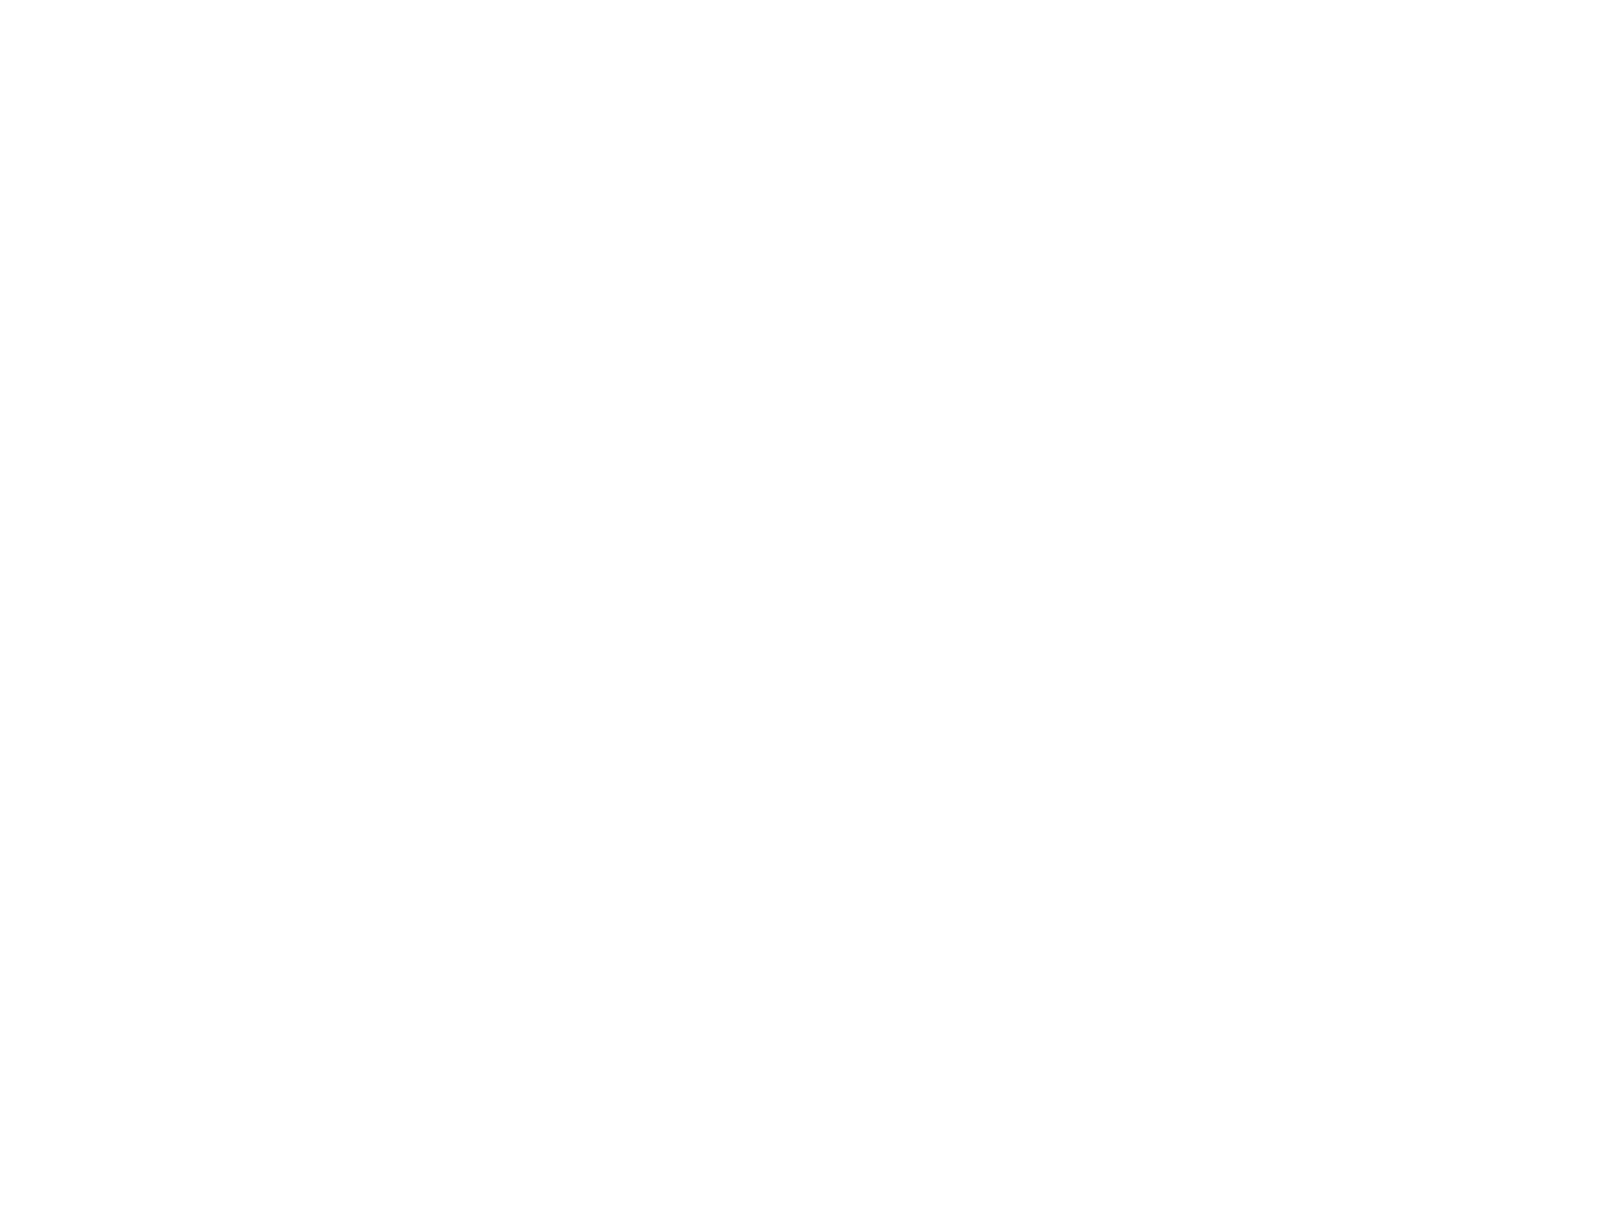 Logodol 全てが高画質 背景透過なアーティストのロゴをお届けするブログ The Gazette ガゼット の背景が透明でサイズが大きいロゴ画像